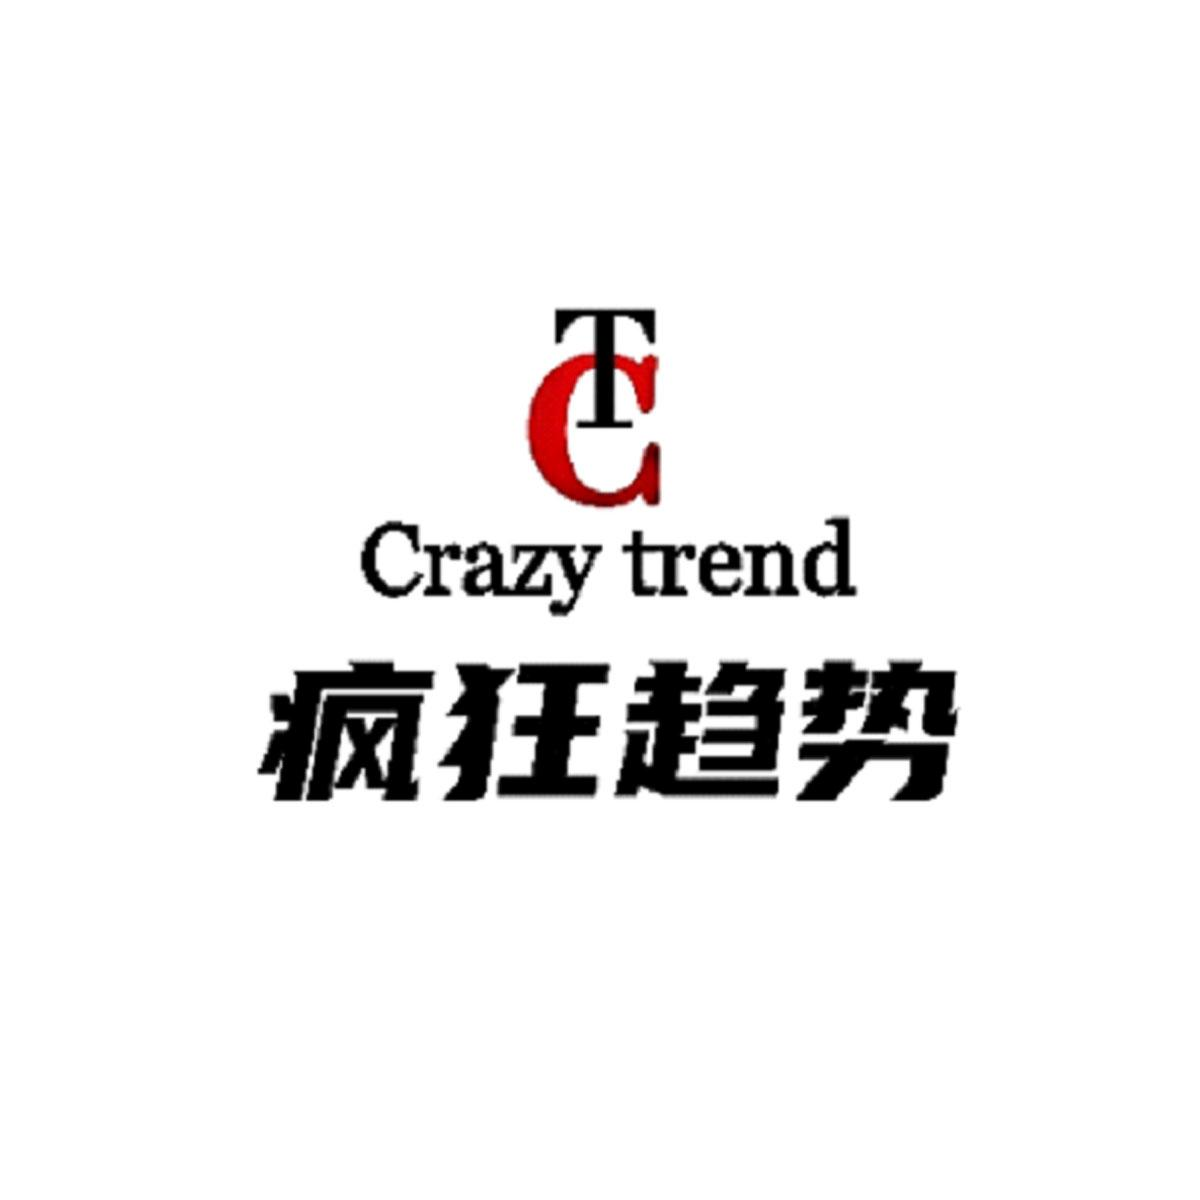 商标文字tc crazy trend 疯狂趋势商标注册号 58291314,商标申请人